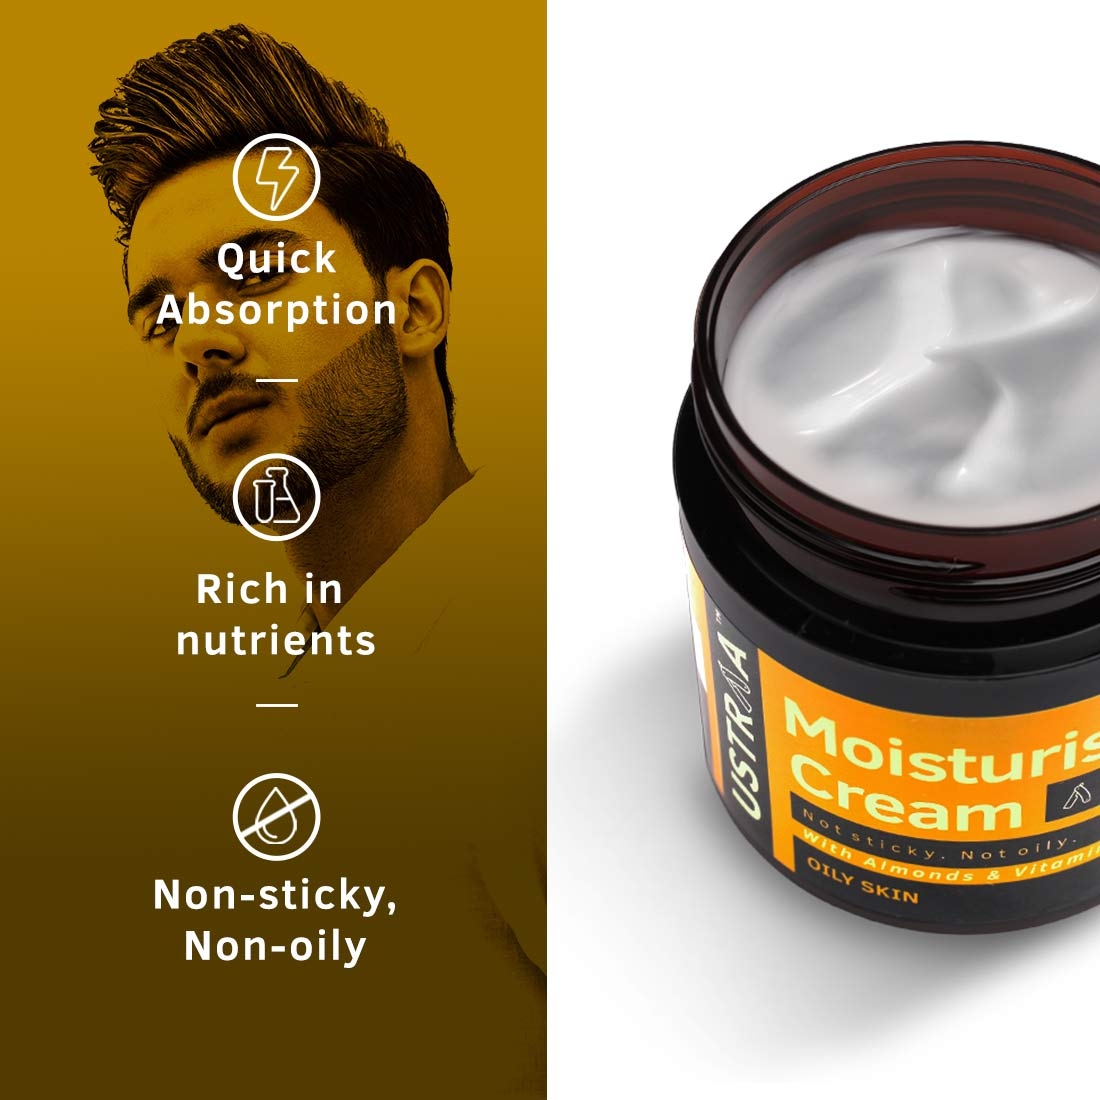 Ustraa | Moisturising Cream for Oily Skin - 100g 4